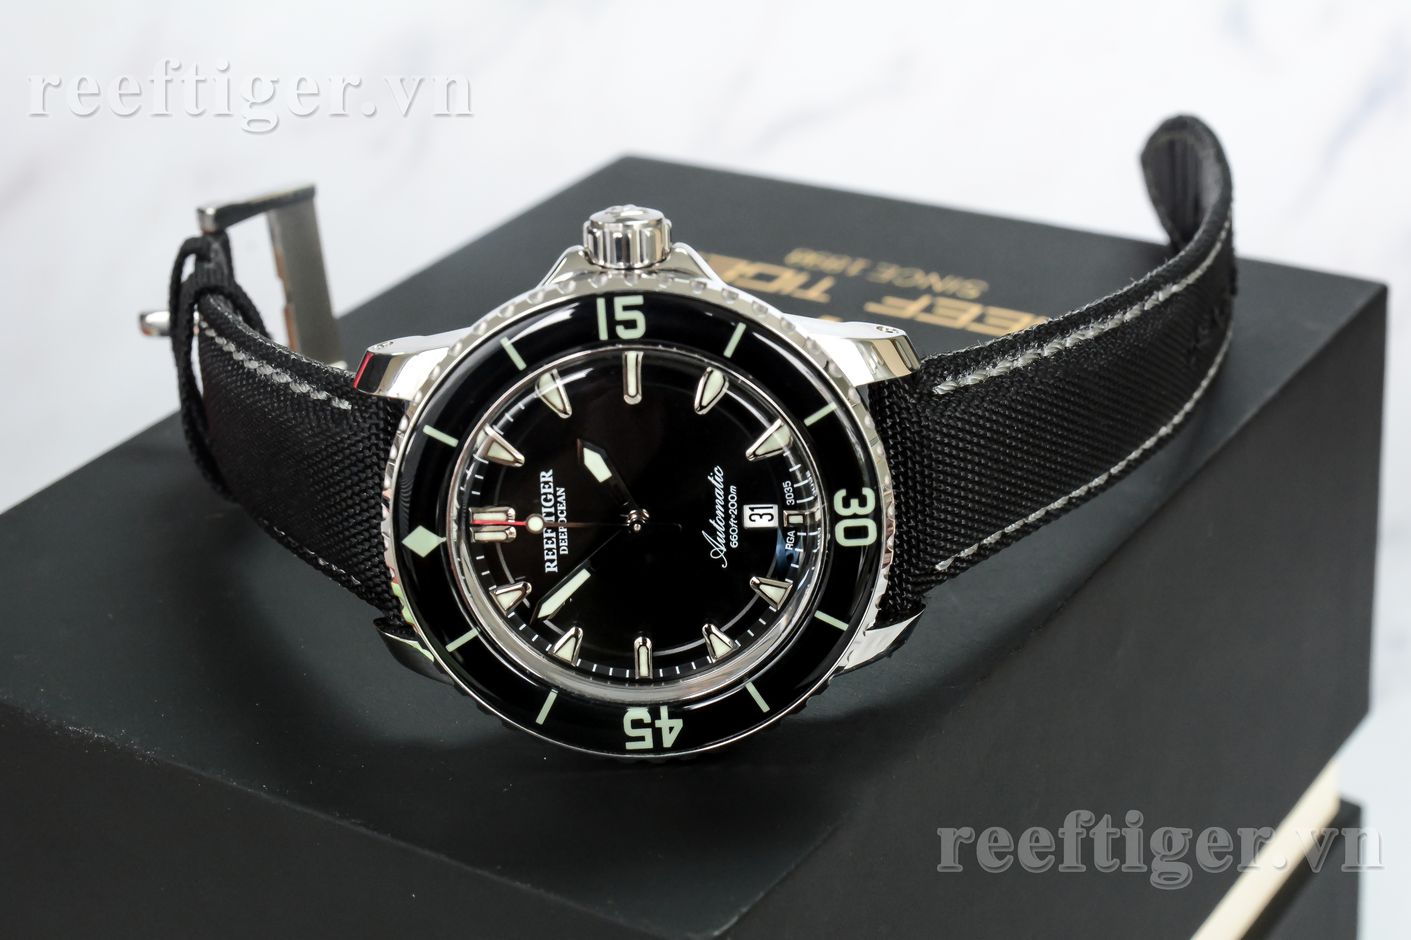 Đồng hồ Reef Tiger RGA3035-YBBW